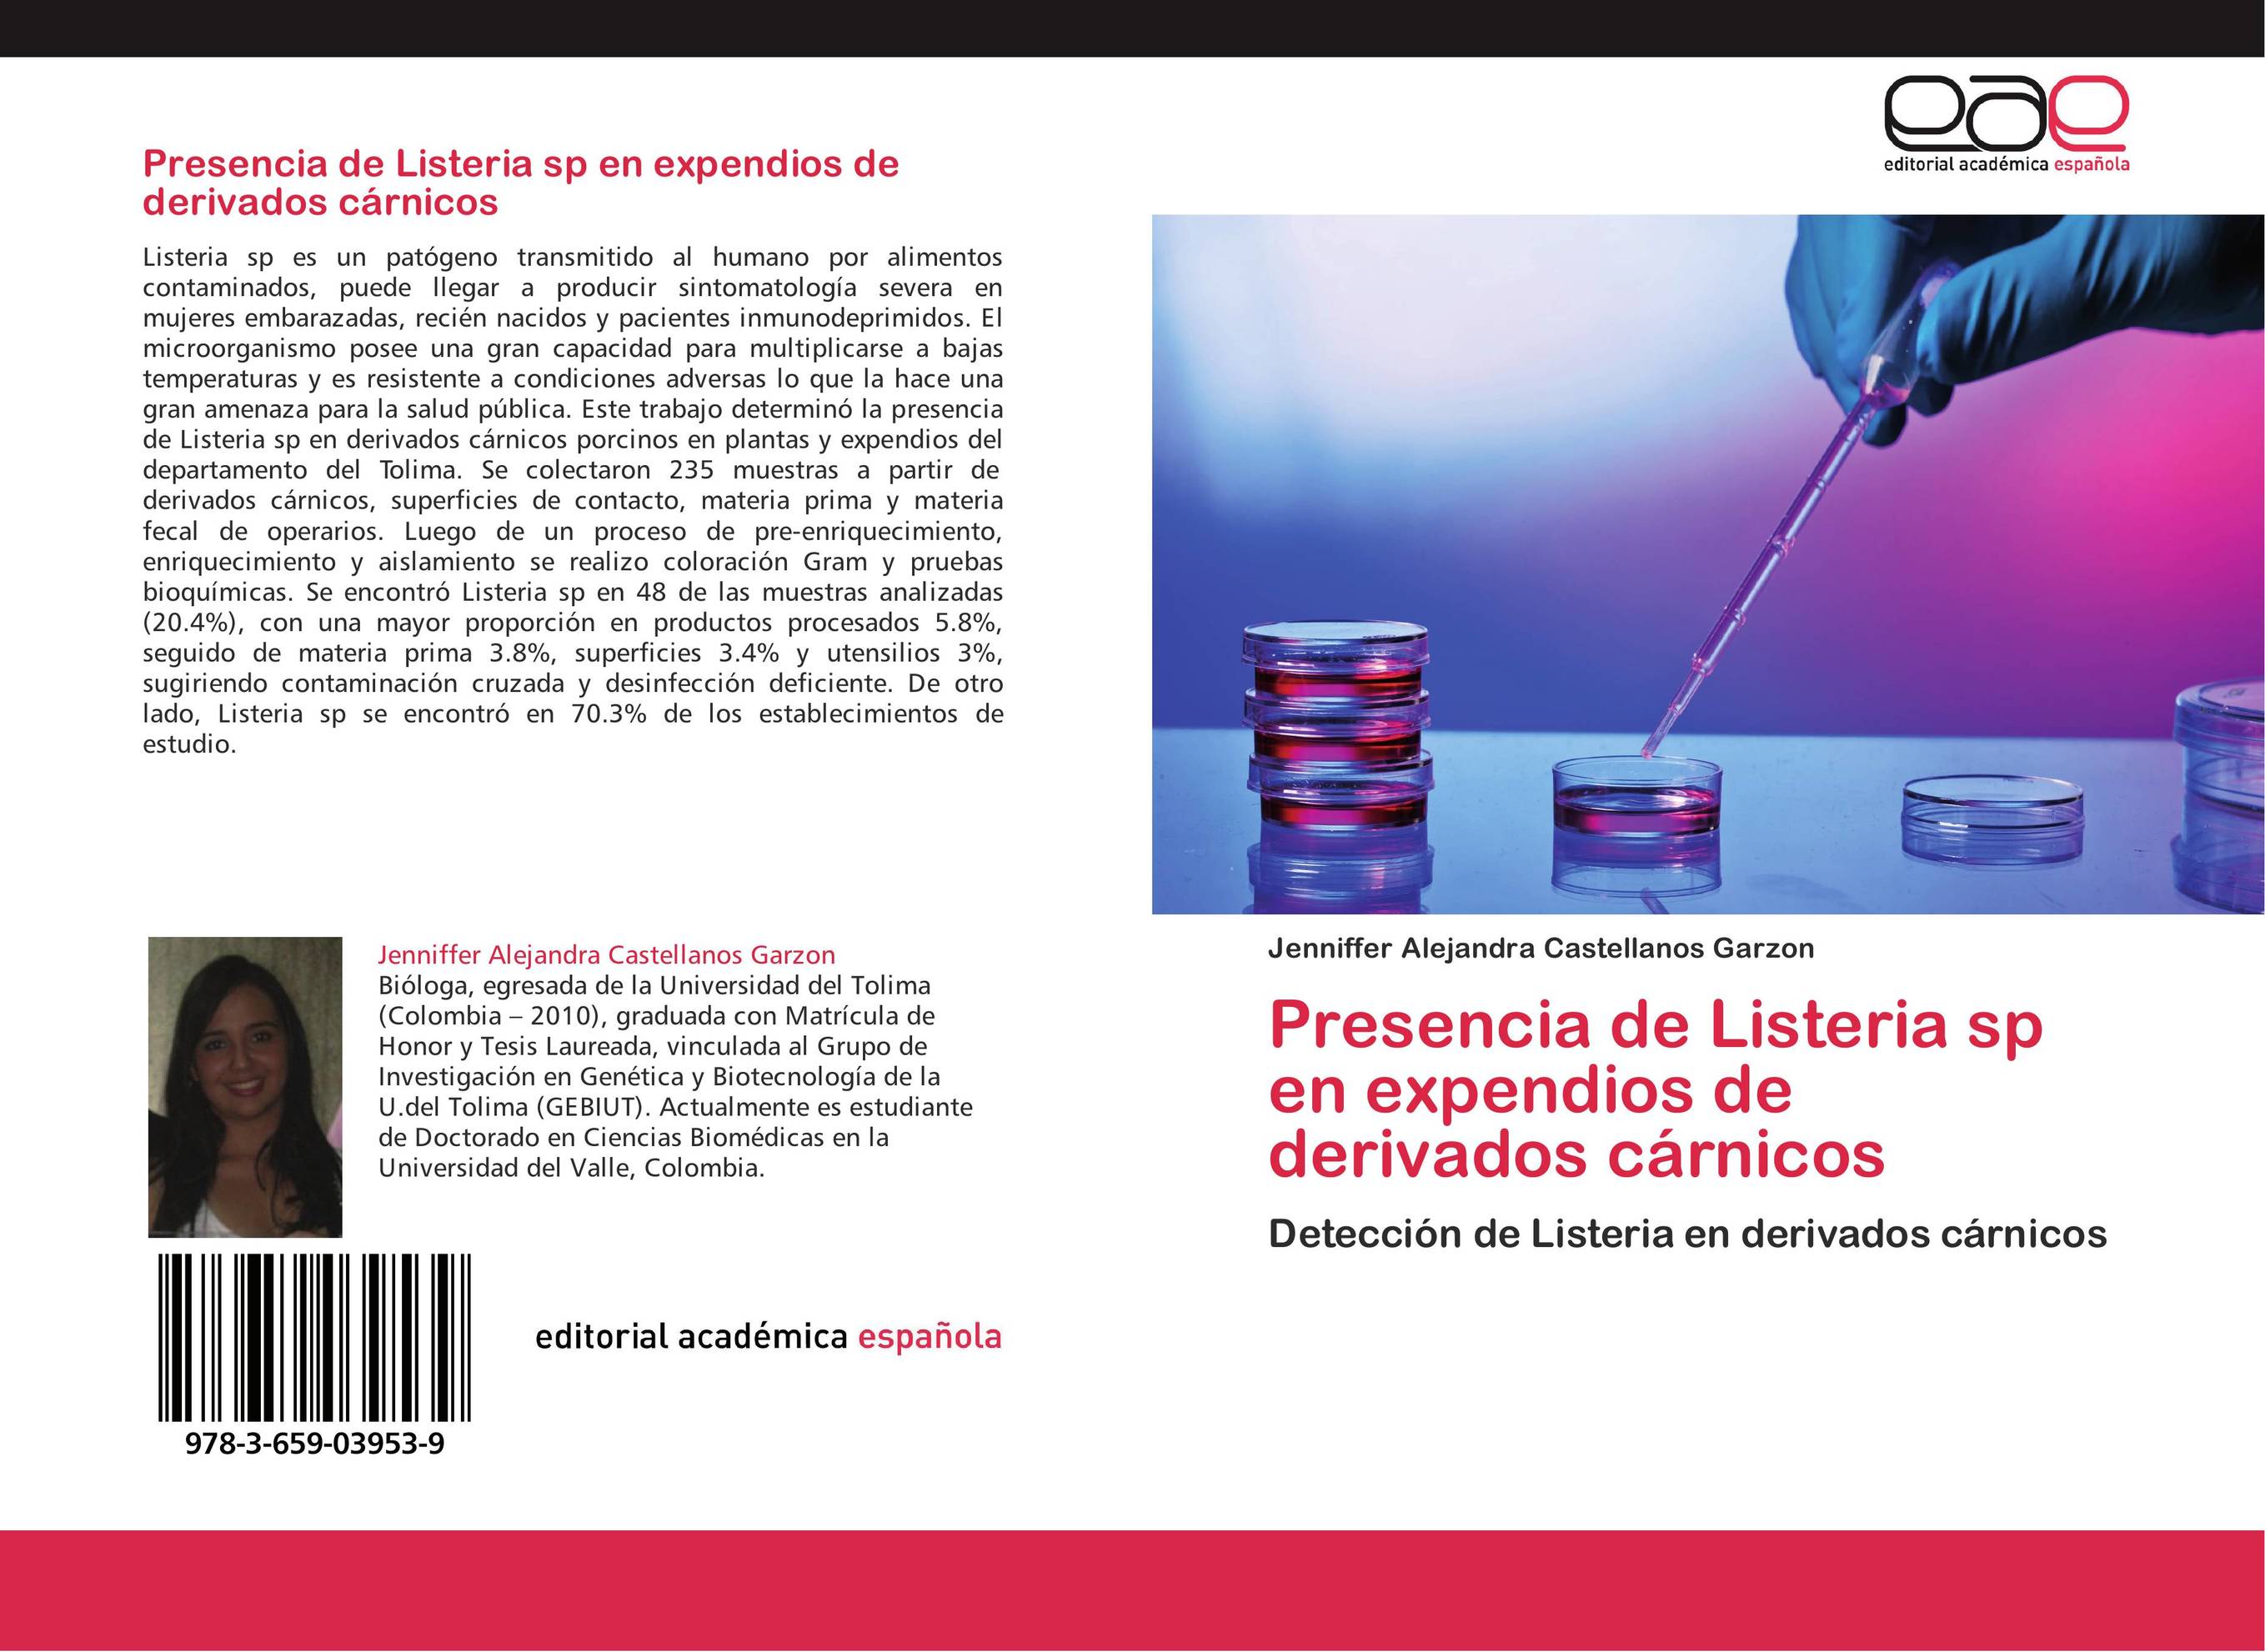 Presencia de Listeria sp en expendios de derivados cárnicos